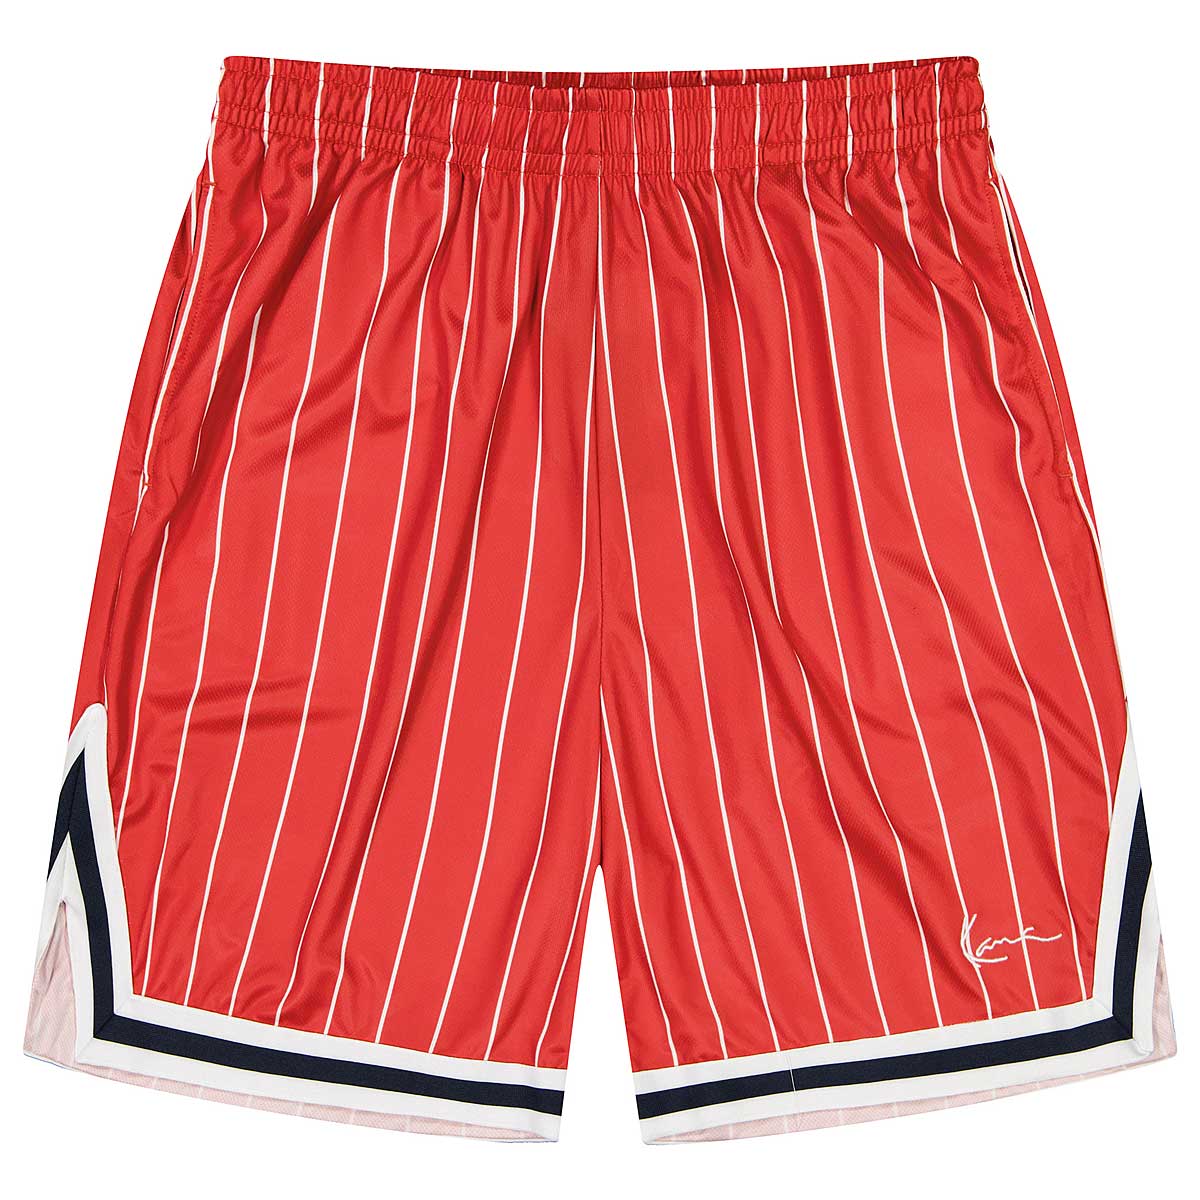 Karl Kani Small Signature Pinstripe Baseball Shorts, Red